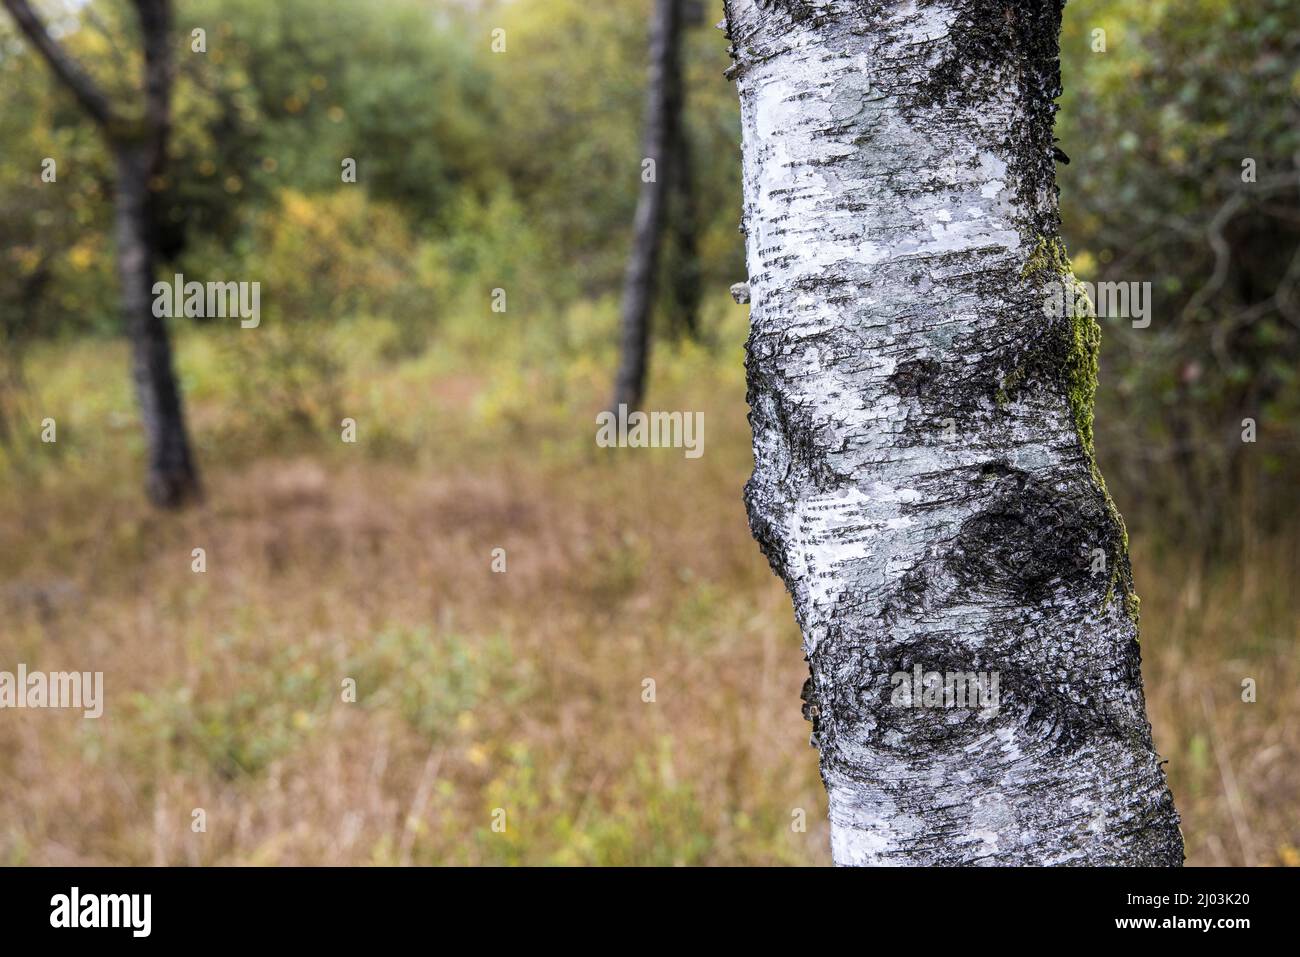 Birch tree bark in Tarn Moss nature reserve, Malham Tarn, Yorkshire Dales, UK Stock Photo